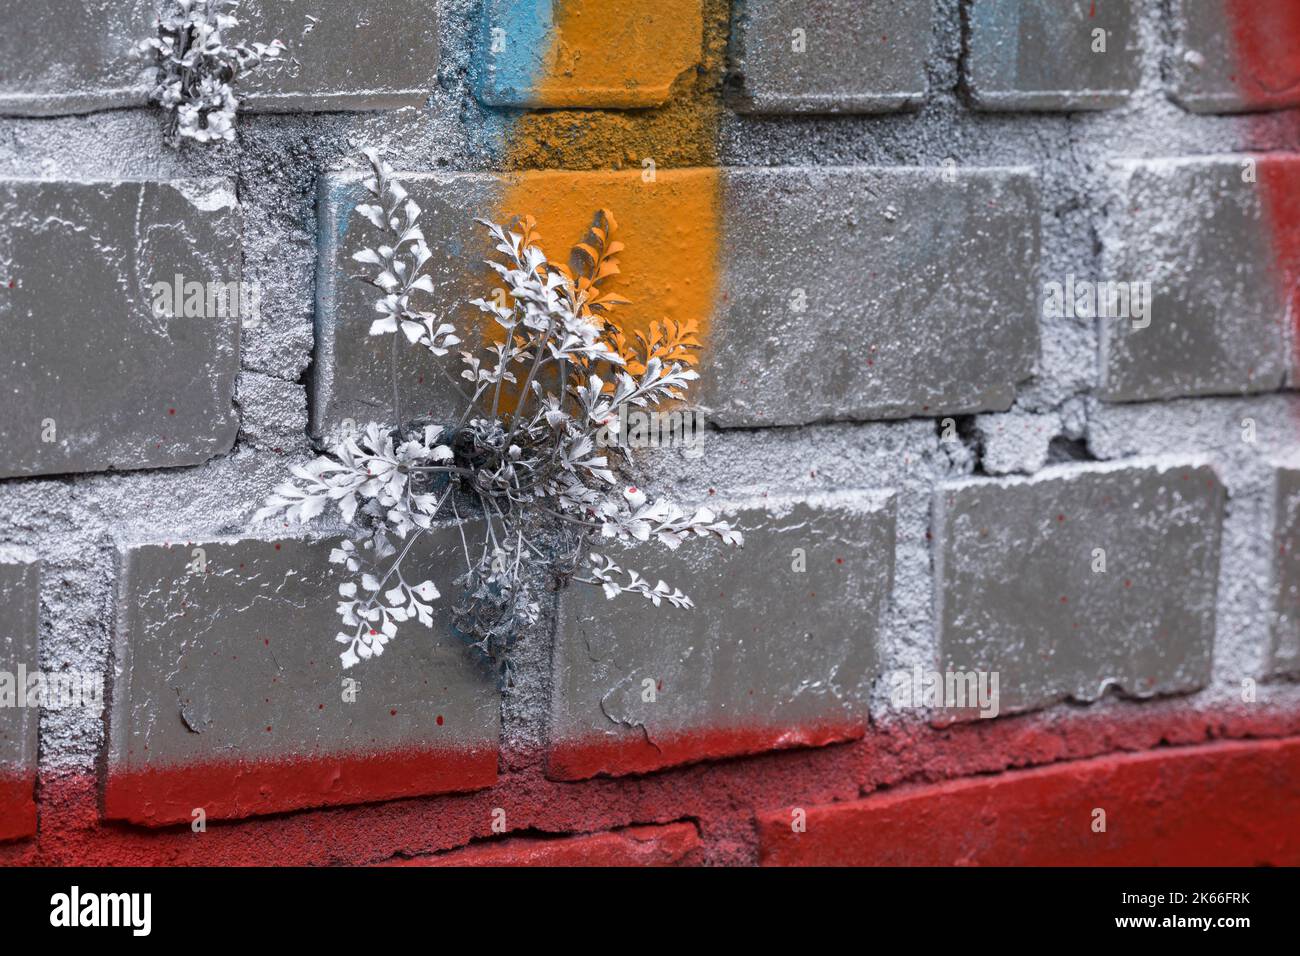 Wallrue spleenwort (Asplenium ruta-muraria), croissant sur un mur, pulvérisé de graffiti, Allemagne Banque D'Images